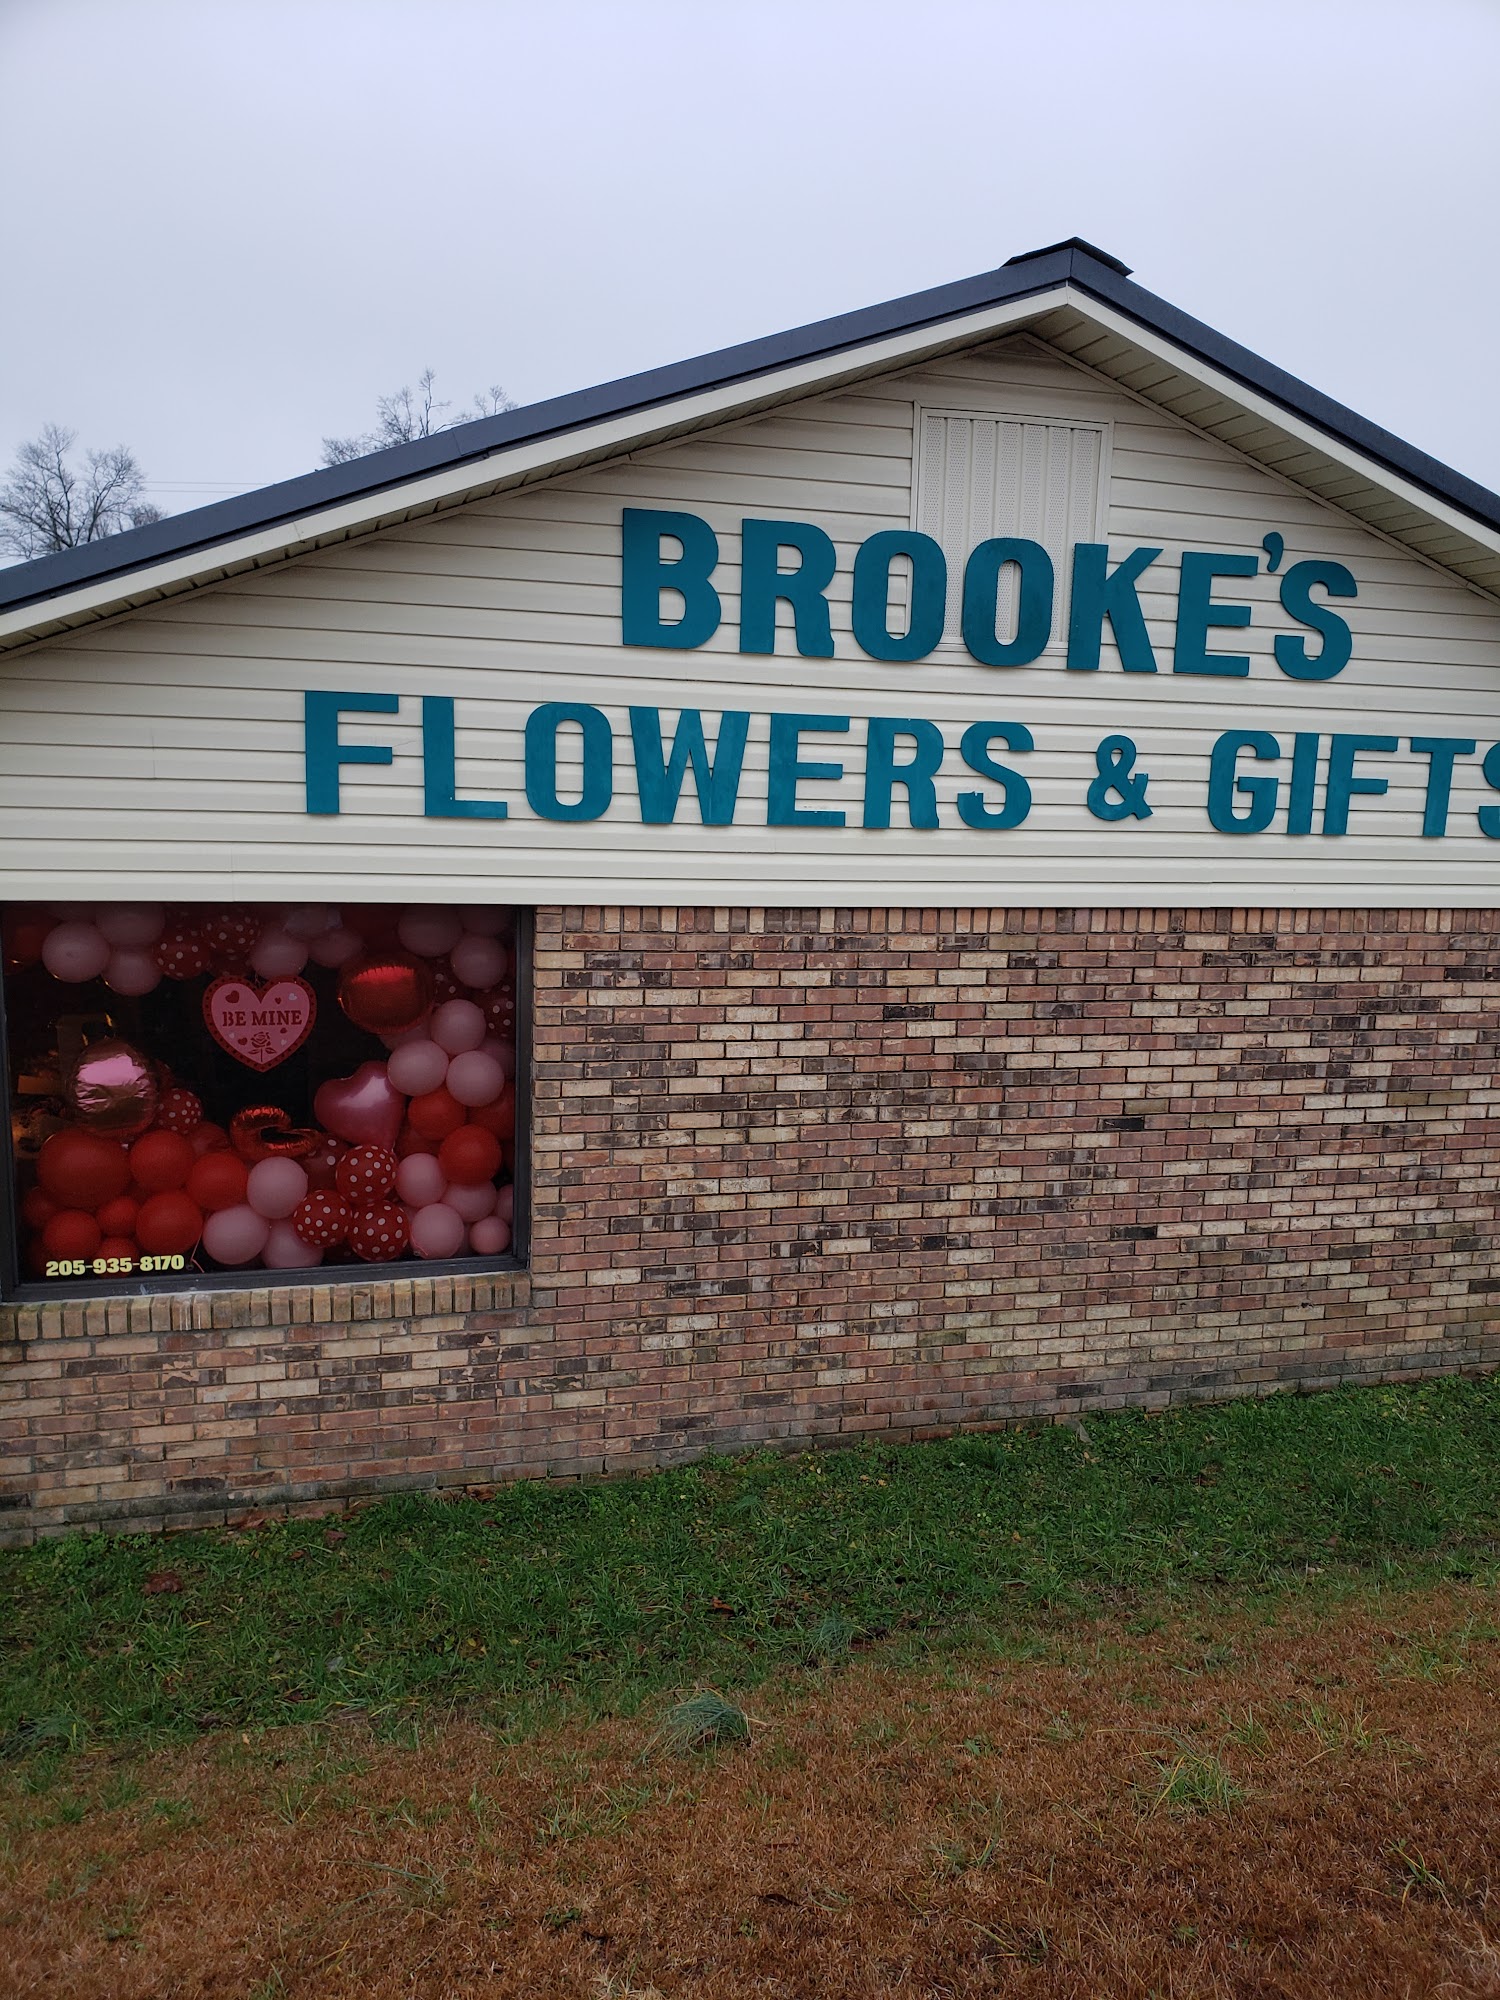 Hackleburg Flower Shop 410 1st Ave, Hackleburg Alabama 35564